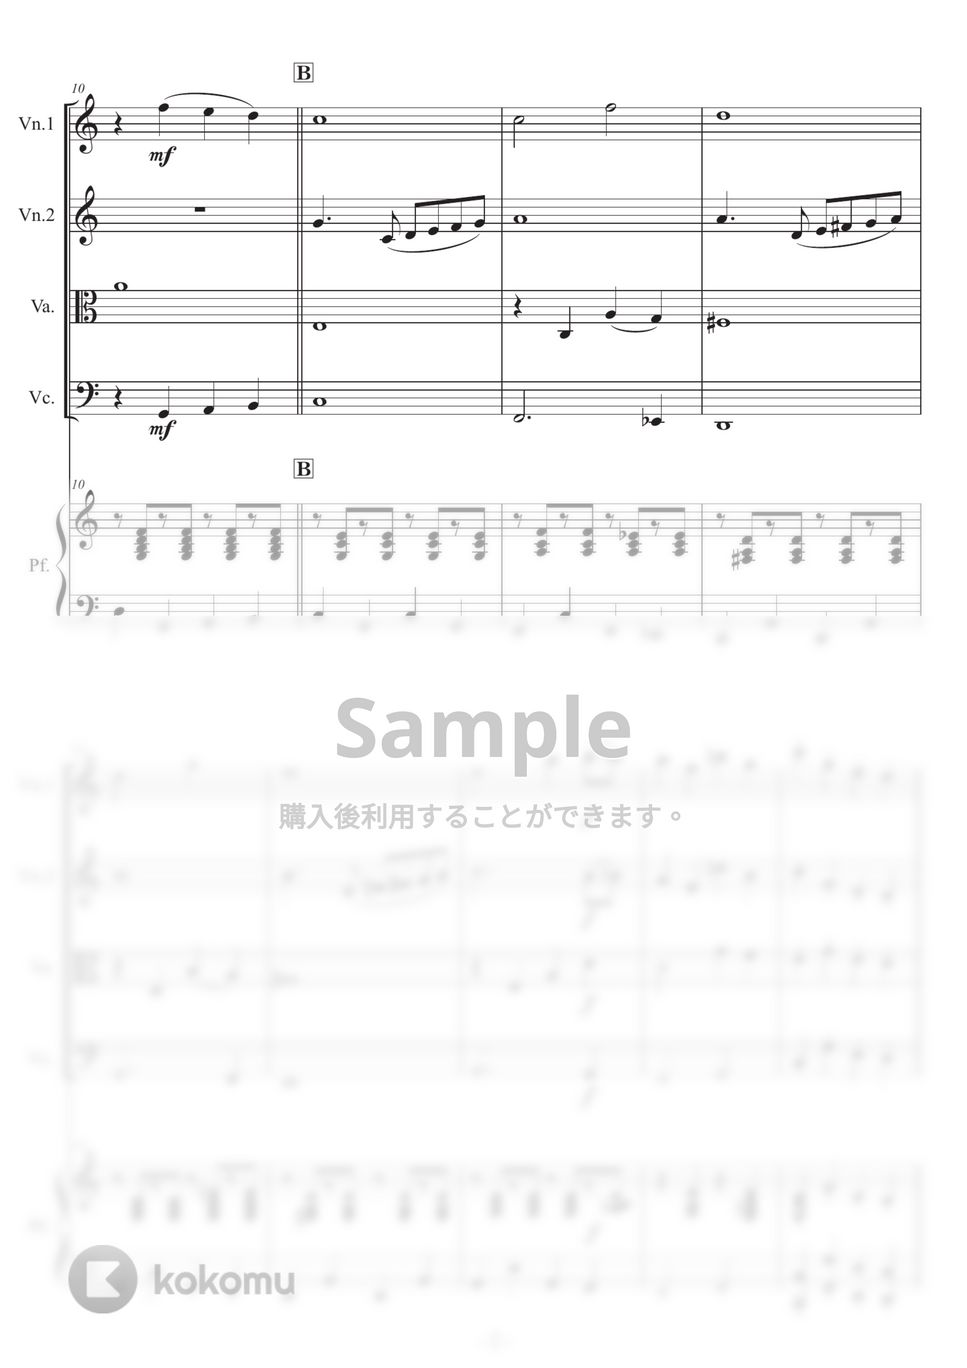 Richard Rodgers - 【ピアノ五重奏】ドレミのうた (『サウンド・オブ・ミュージック』より) by 栗原義継